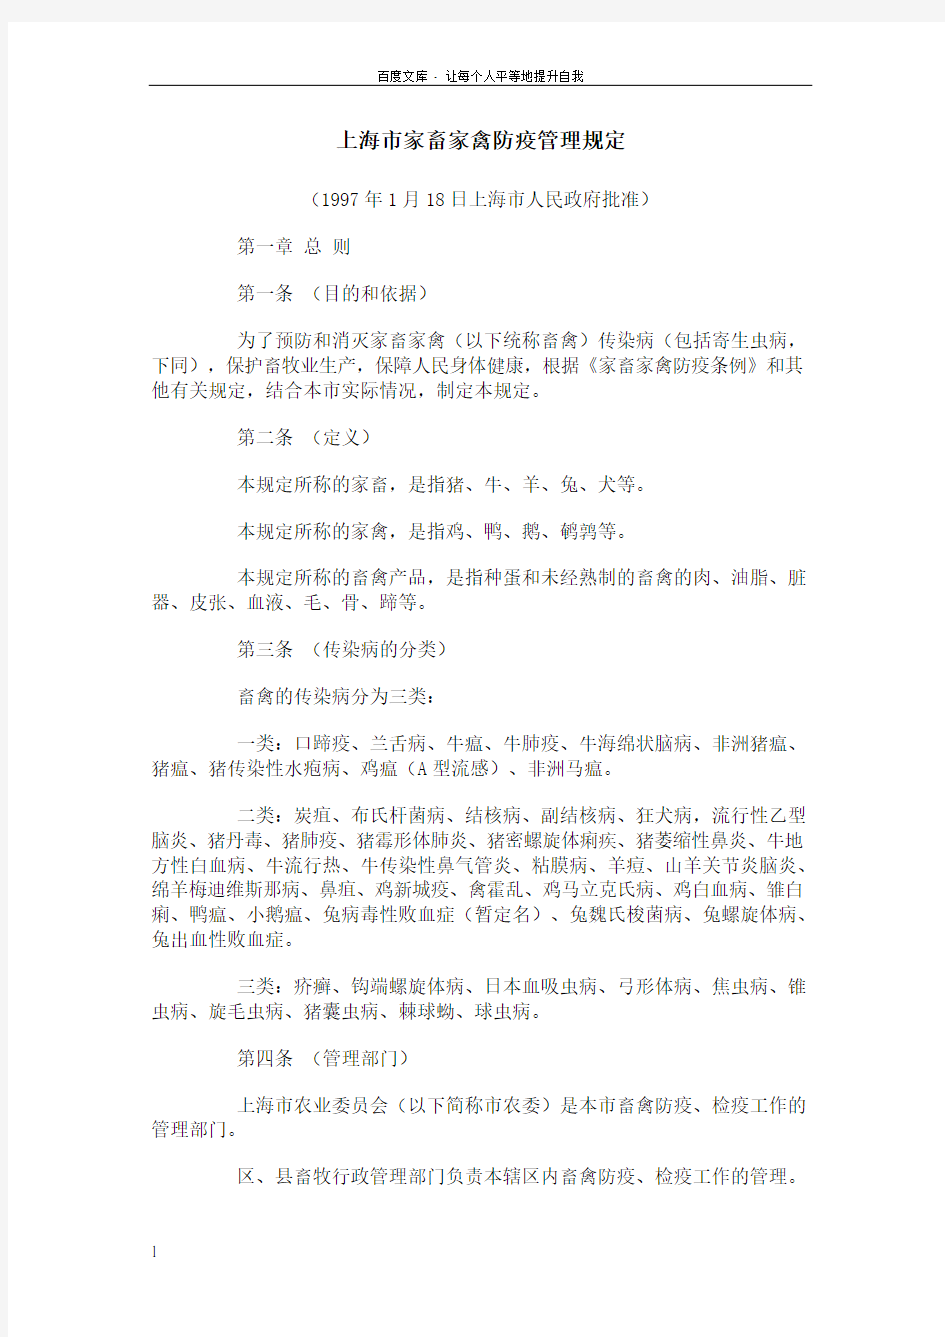 上海市家畜家禽防疫管理规定